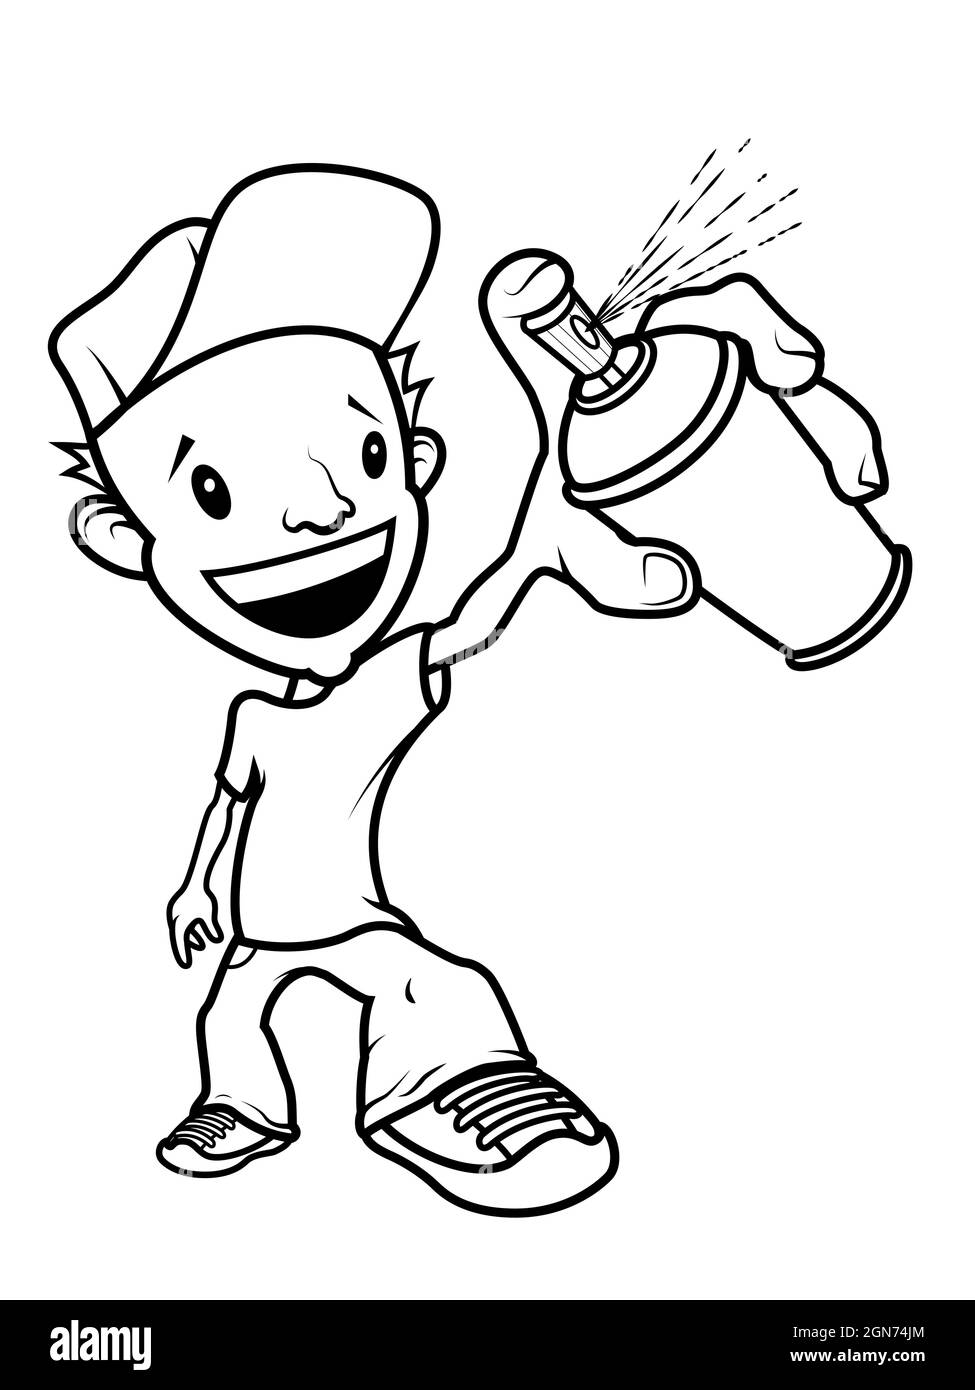 Personnage d'écrivain de graffiti de dessin animé souriant avec un spray de peinture sur la main. Ligne noire sur fond blanc. Illustration de Vecteur